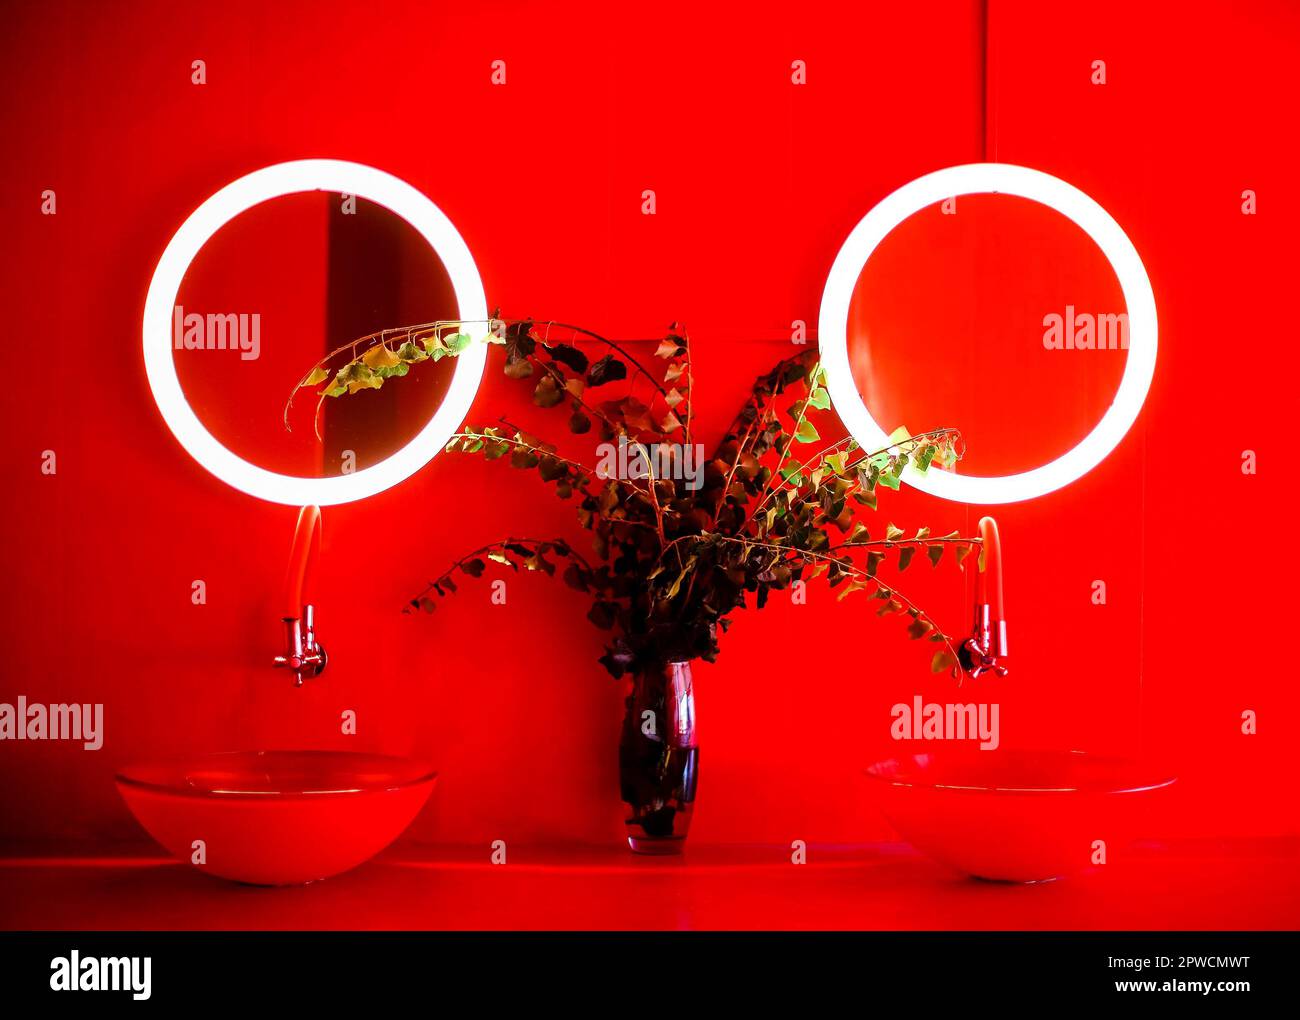 Foto del bagno moderno in tonalità rosse, due forme rotonde eleganti lavandini, vaso trasparente con rami e foglie, coppia di piccole dimensioni rotondo Foto Stock